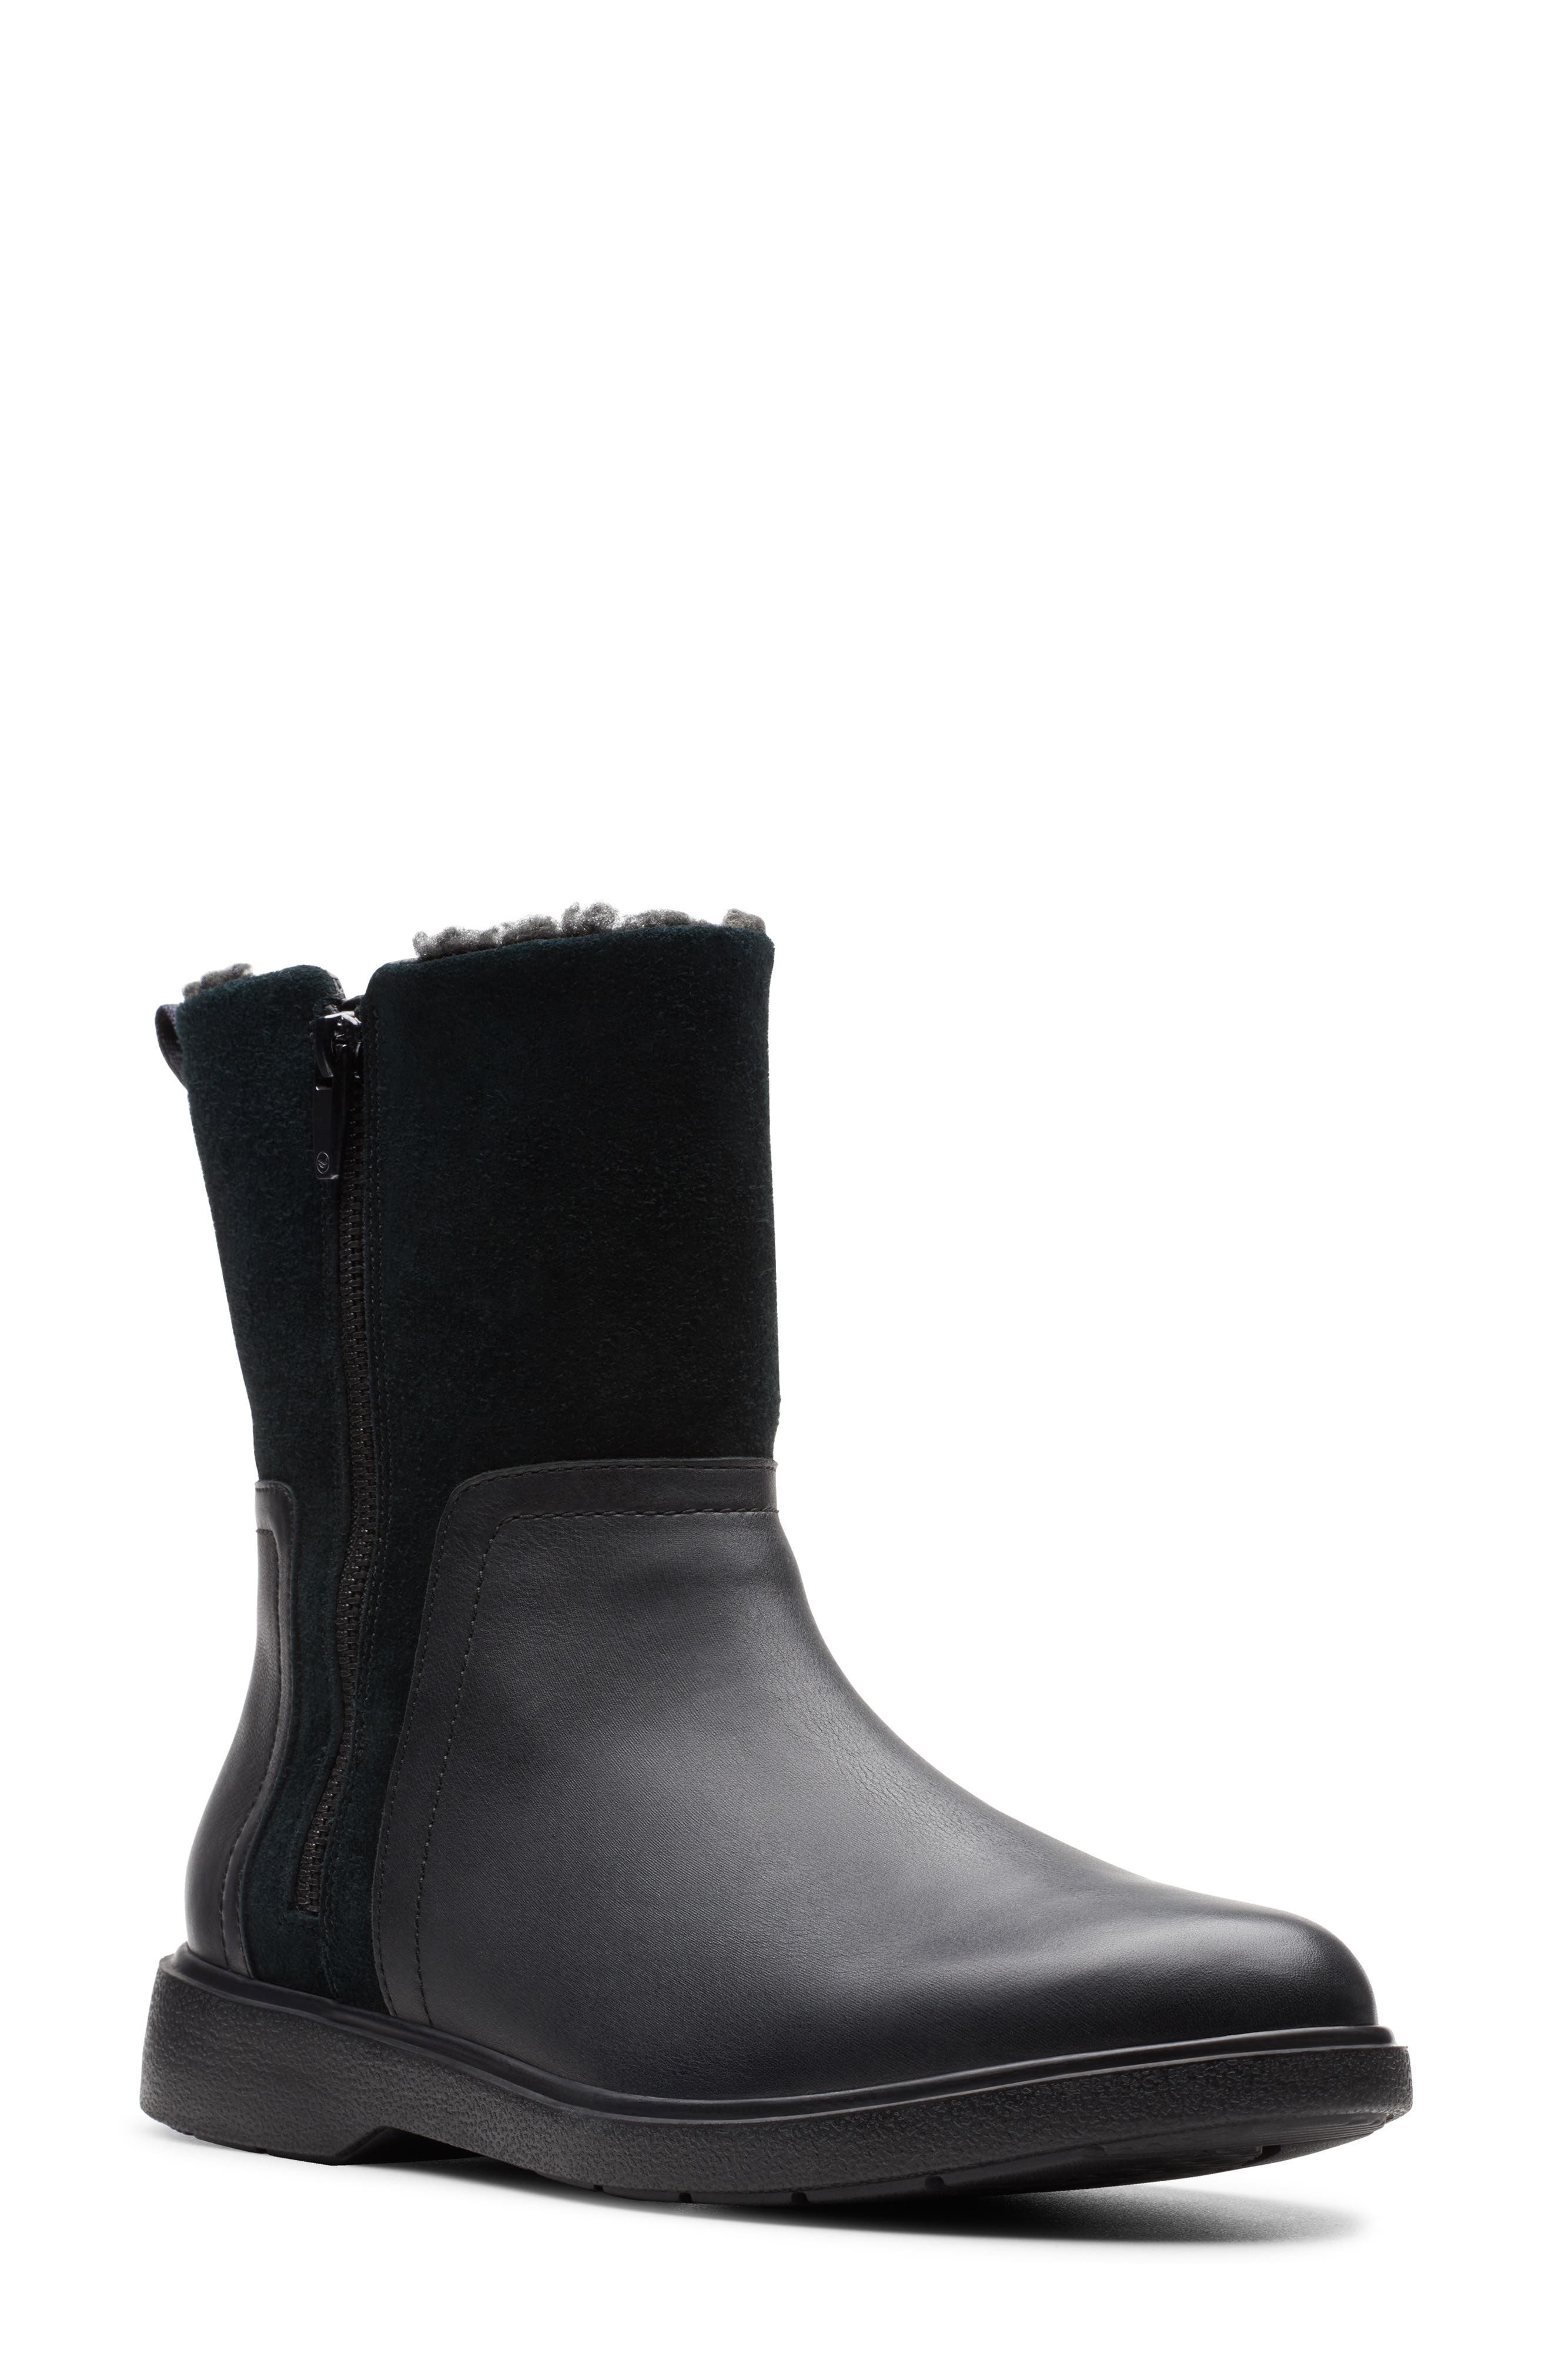 clarks boots waterproof